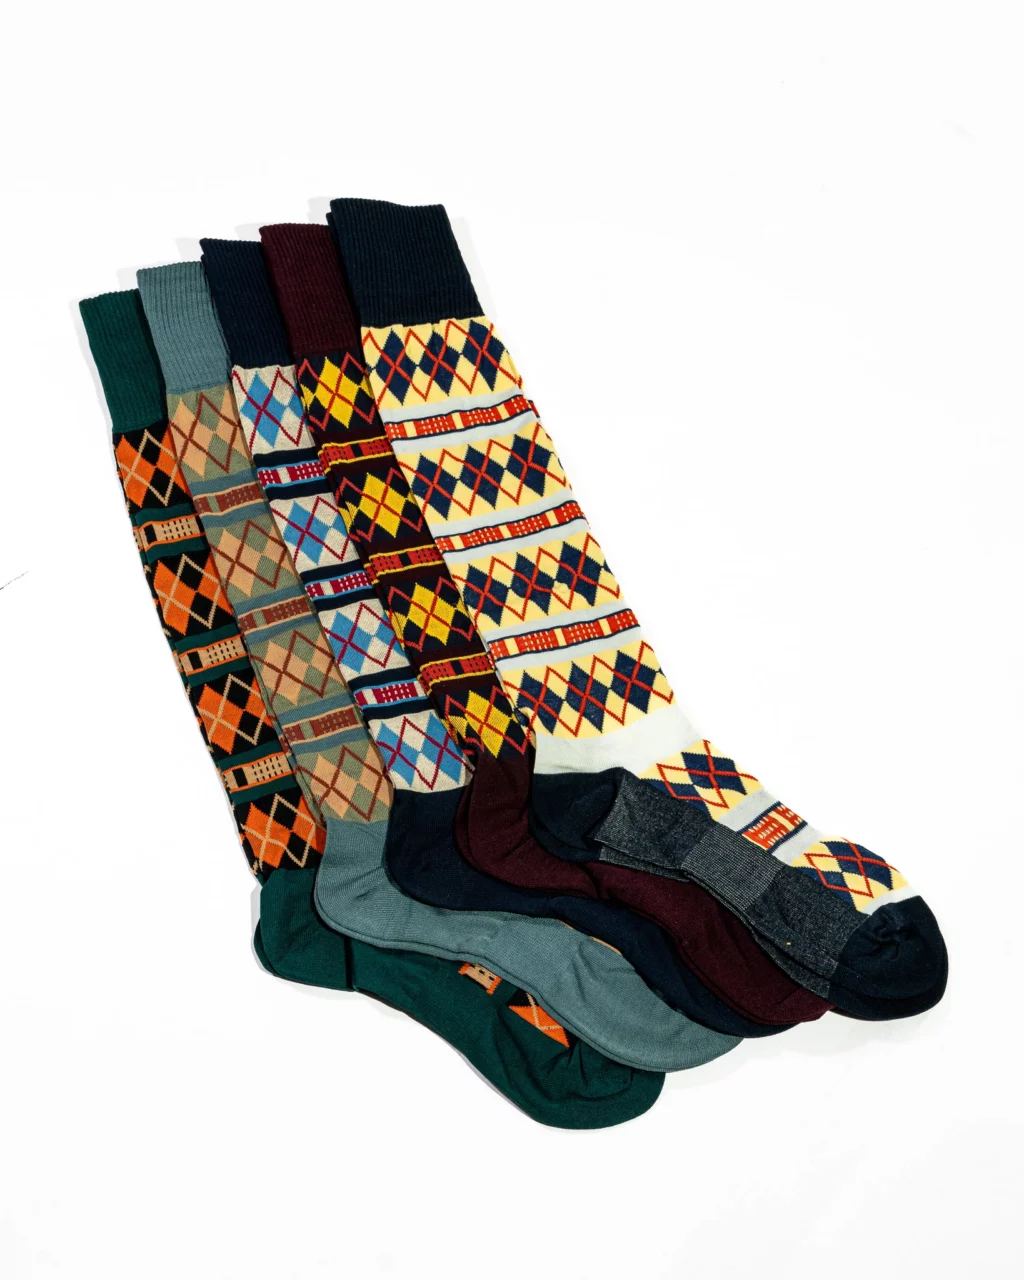 Gentleman’s Fairway Socks – Knee High by SJC. 5 pack